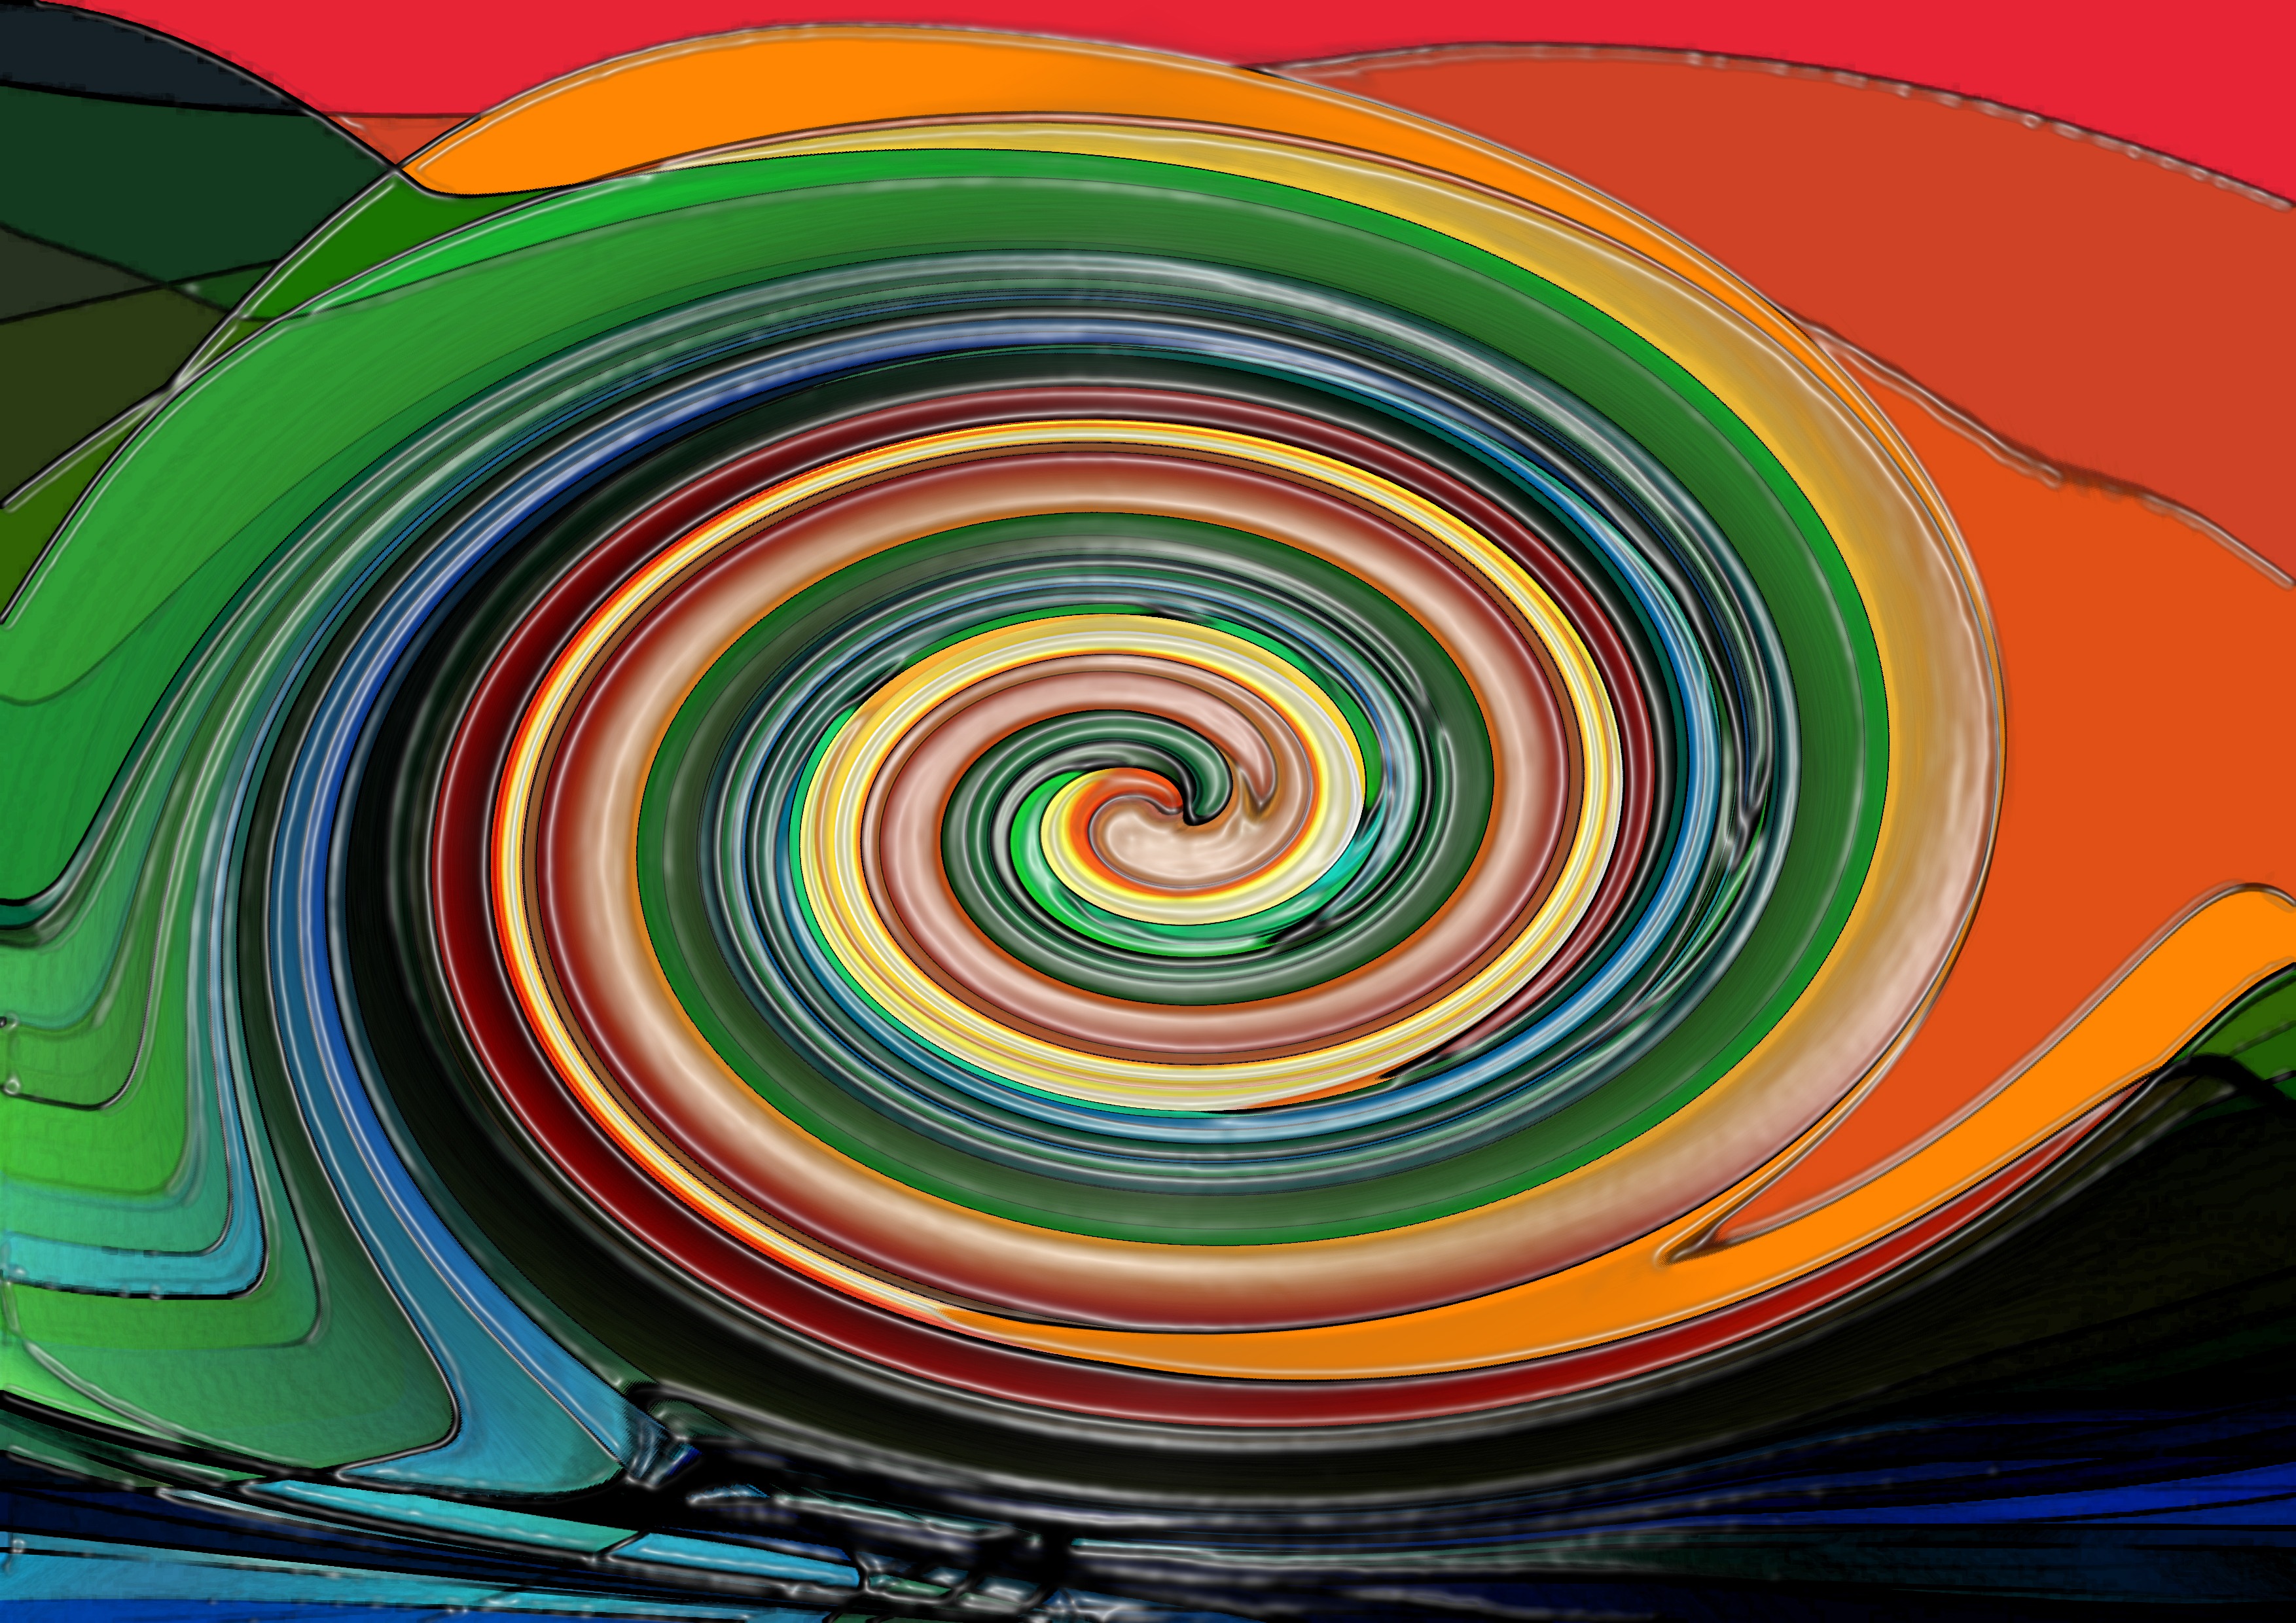 Free Image, spiral, wave, line, green, color, colorful, circle, illustration, symmetry, shape, screenshot, strudel, sog, vortex, computer wallpaper, psychedelic art, fractal art 3508x2480